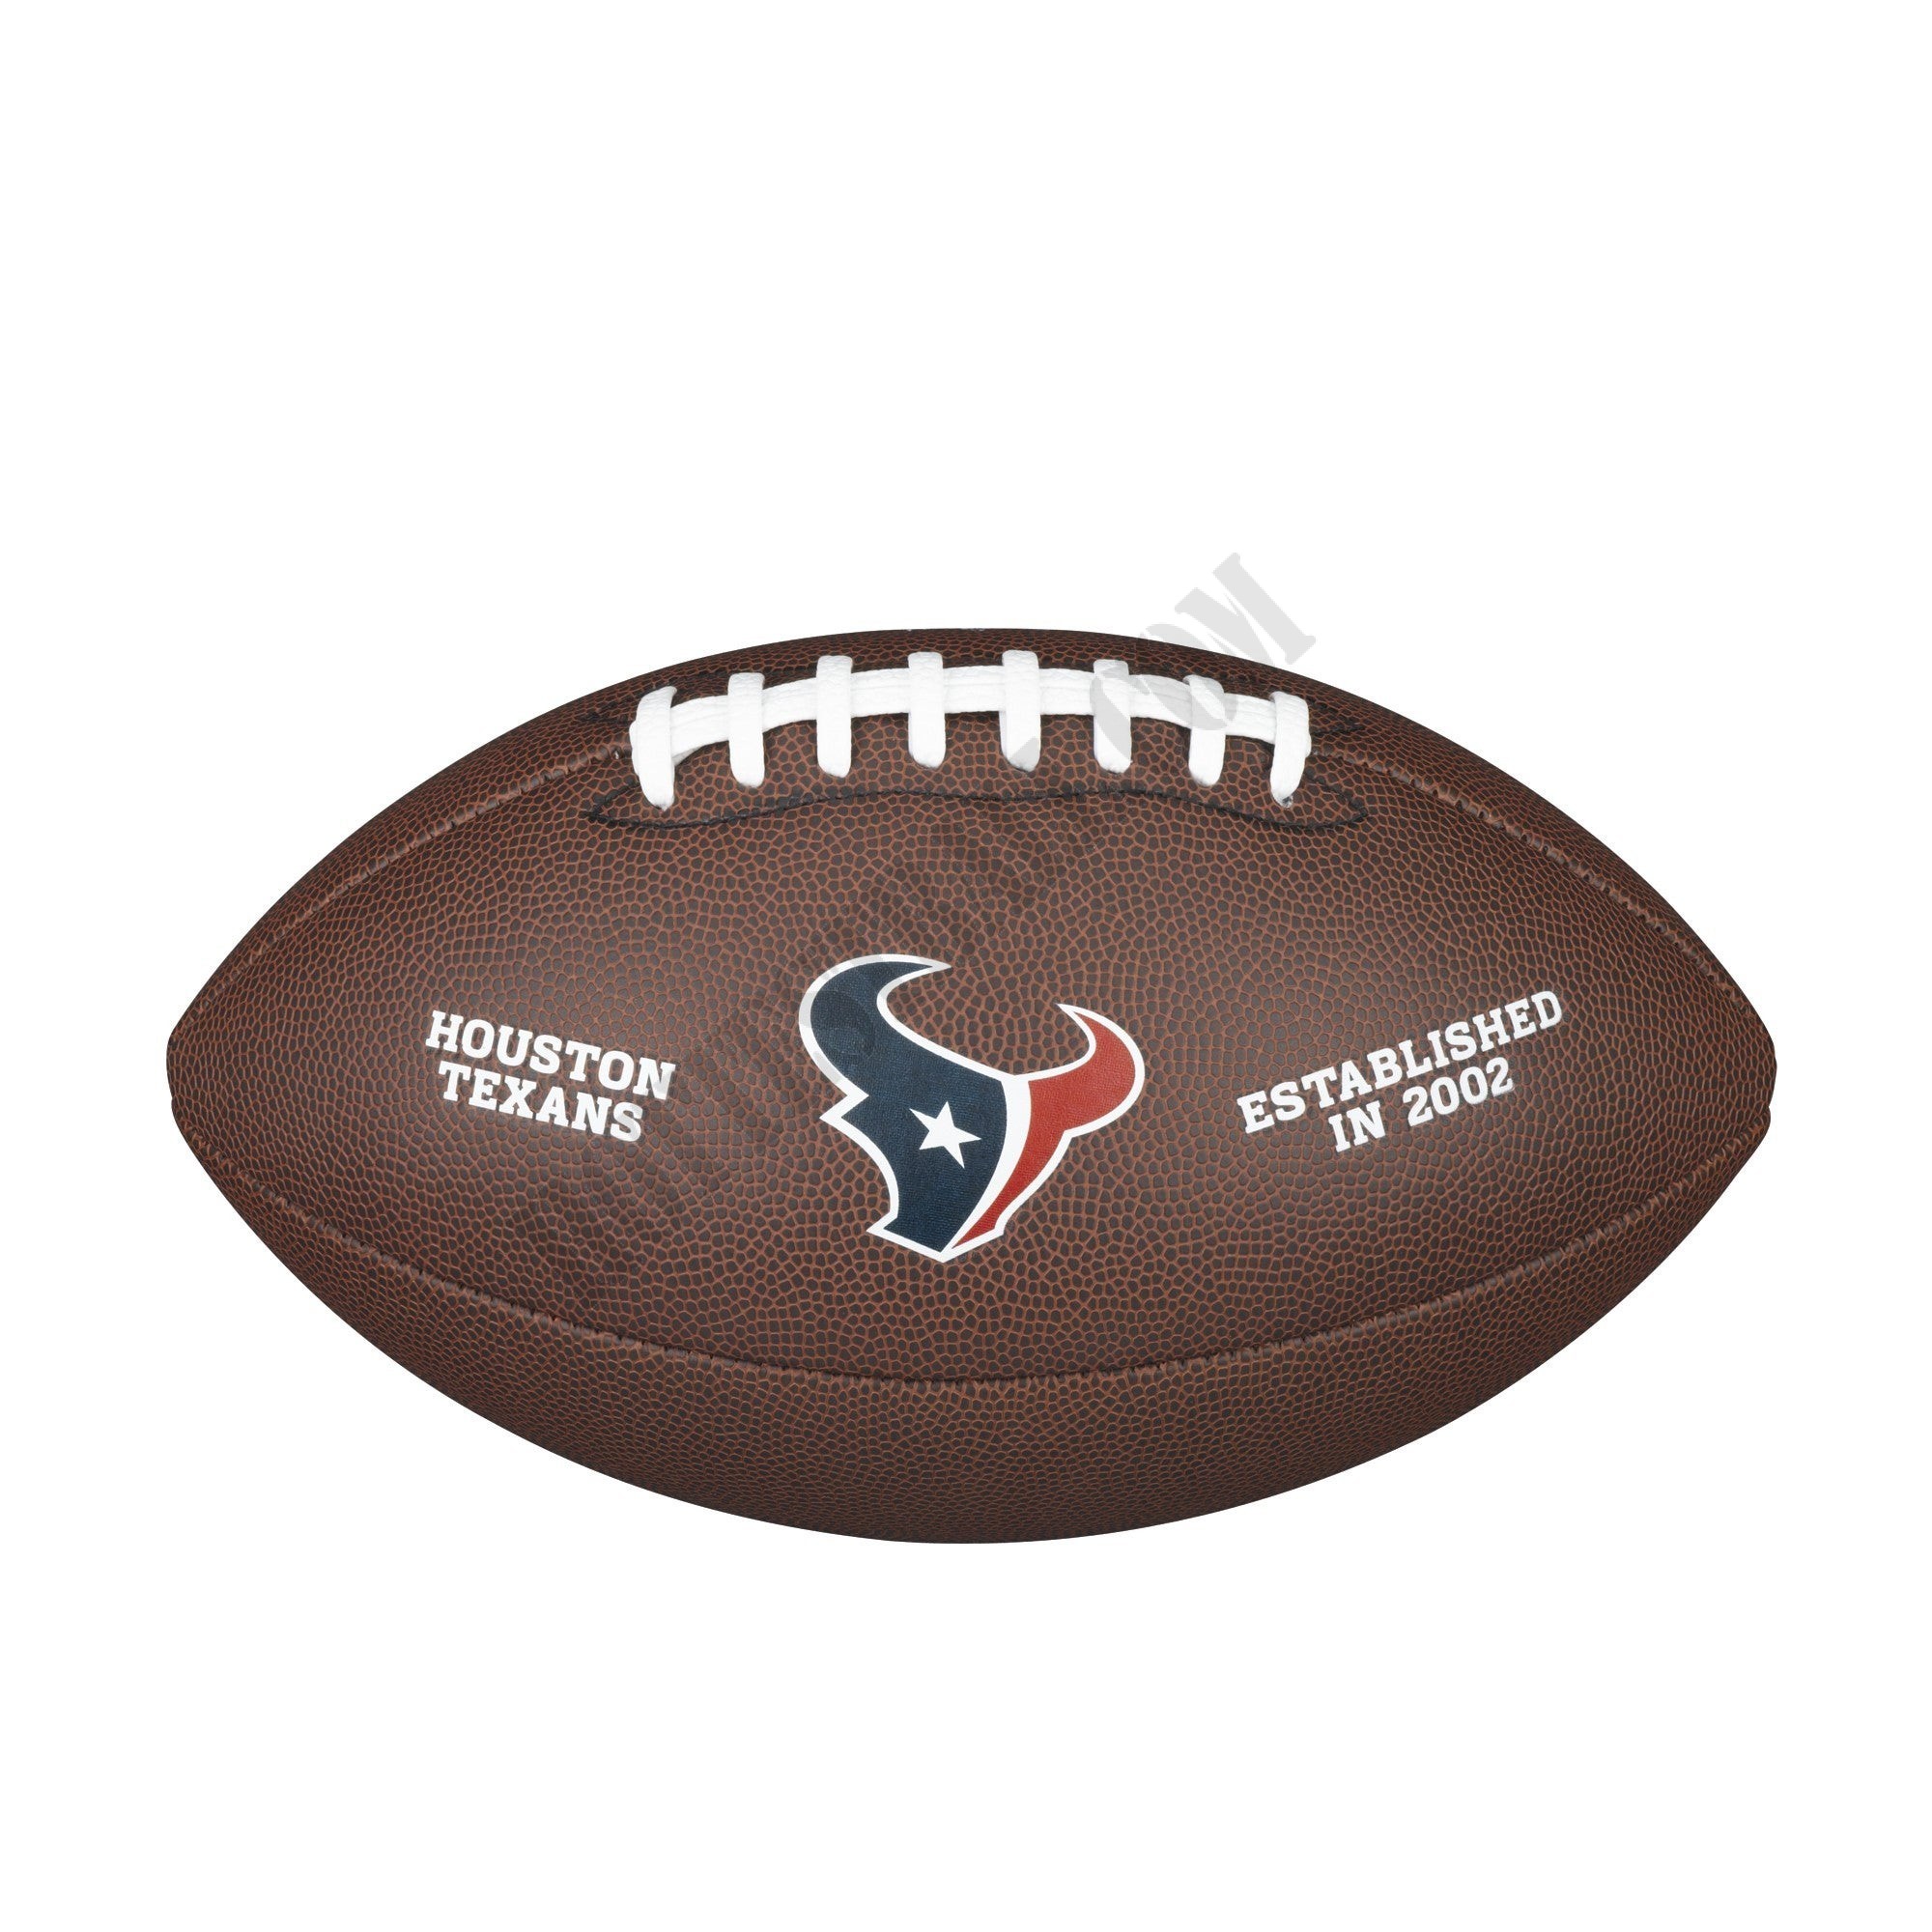 NFL Backyard Legend Football - Houston Texans ● Wilson Promotions - NFL Backyard Legend Football - Houston Texans ● Wilson Promotions